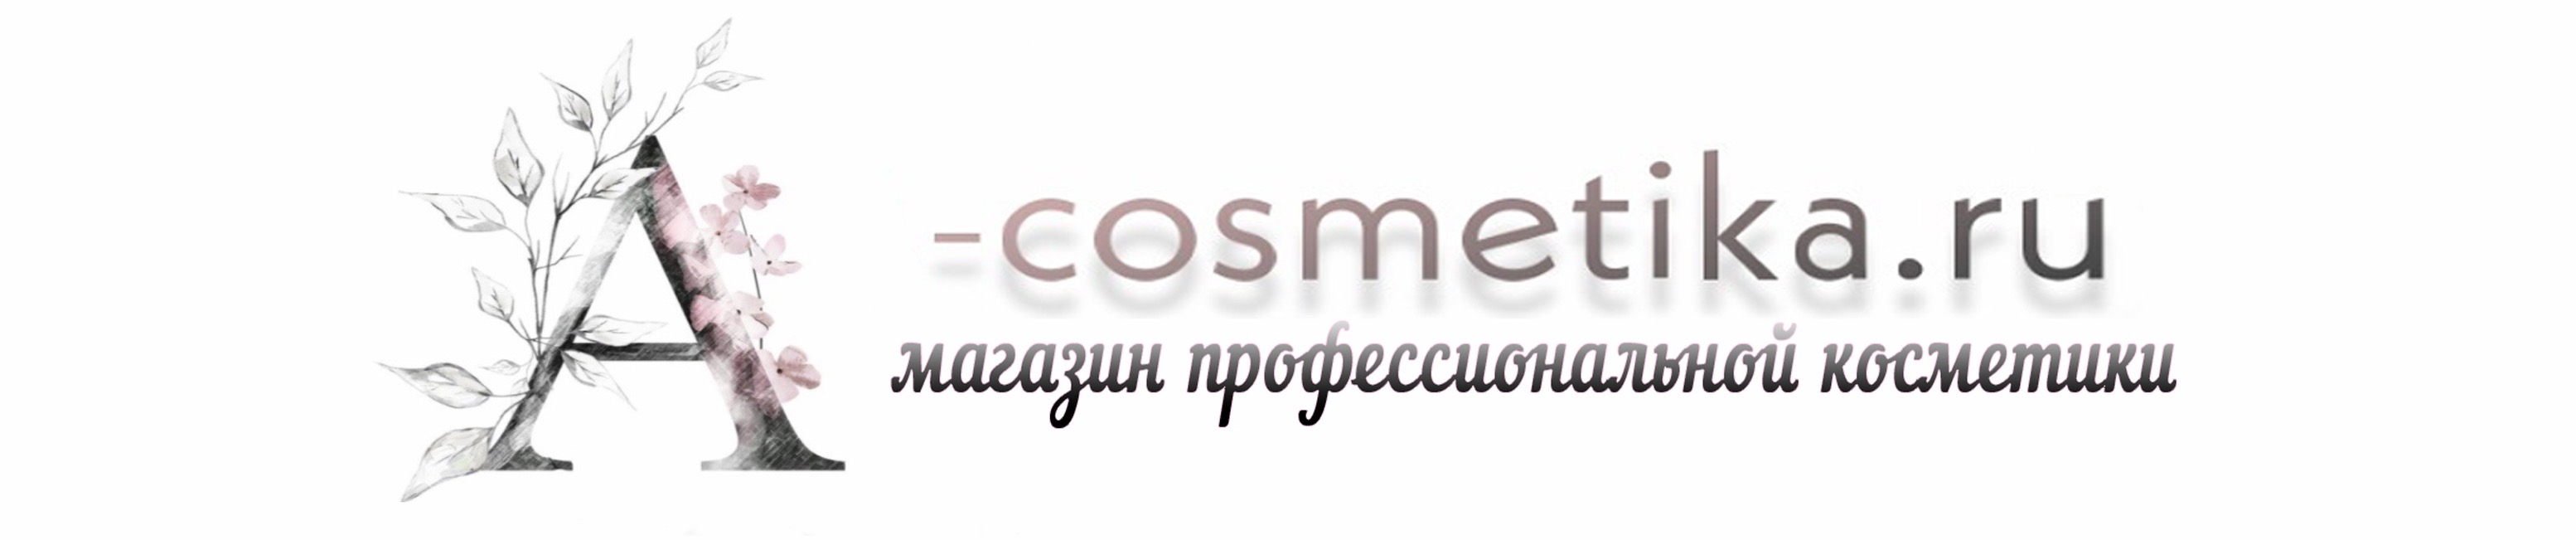 A-cosmetika.ru